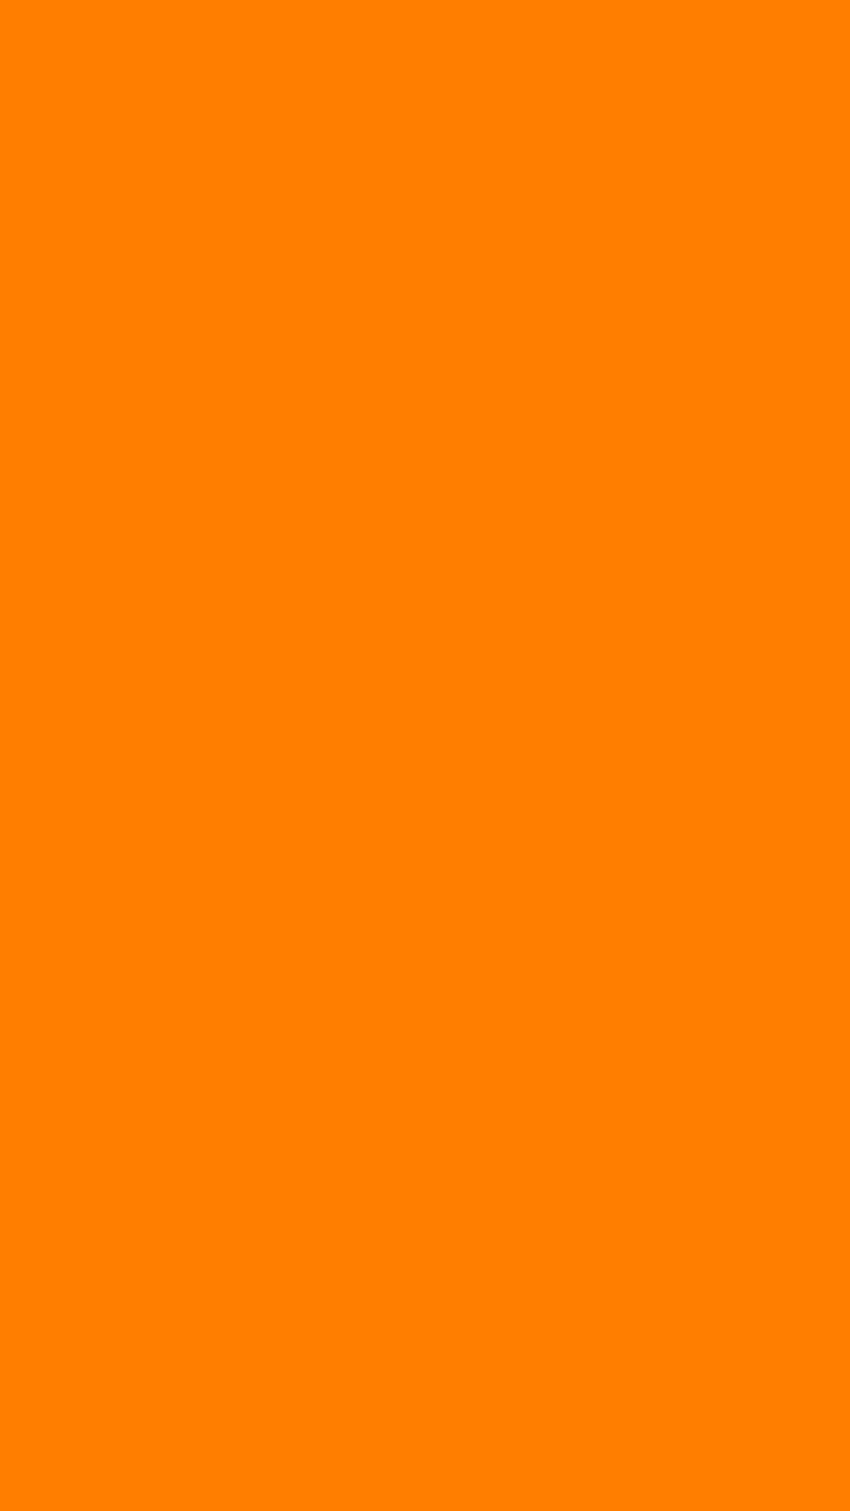 Hình nền HD màu cam nâu đồng nhất sẽ khiến không gian làm việc hay giải trí của bạn thêm phần sinh động và ấn tượng. Gam màu độc đáo này mang lại sự lịch lãm và sang trọng, giúp bạn tăng cường sự tập trung và sáng tạo. Hãy cùng khám phá nhé!